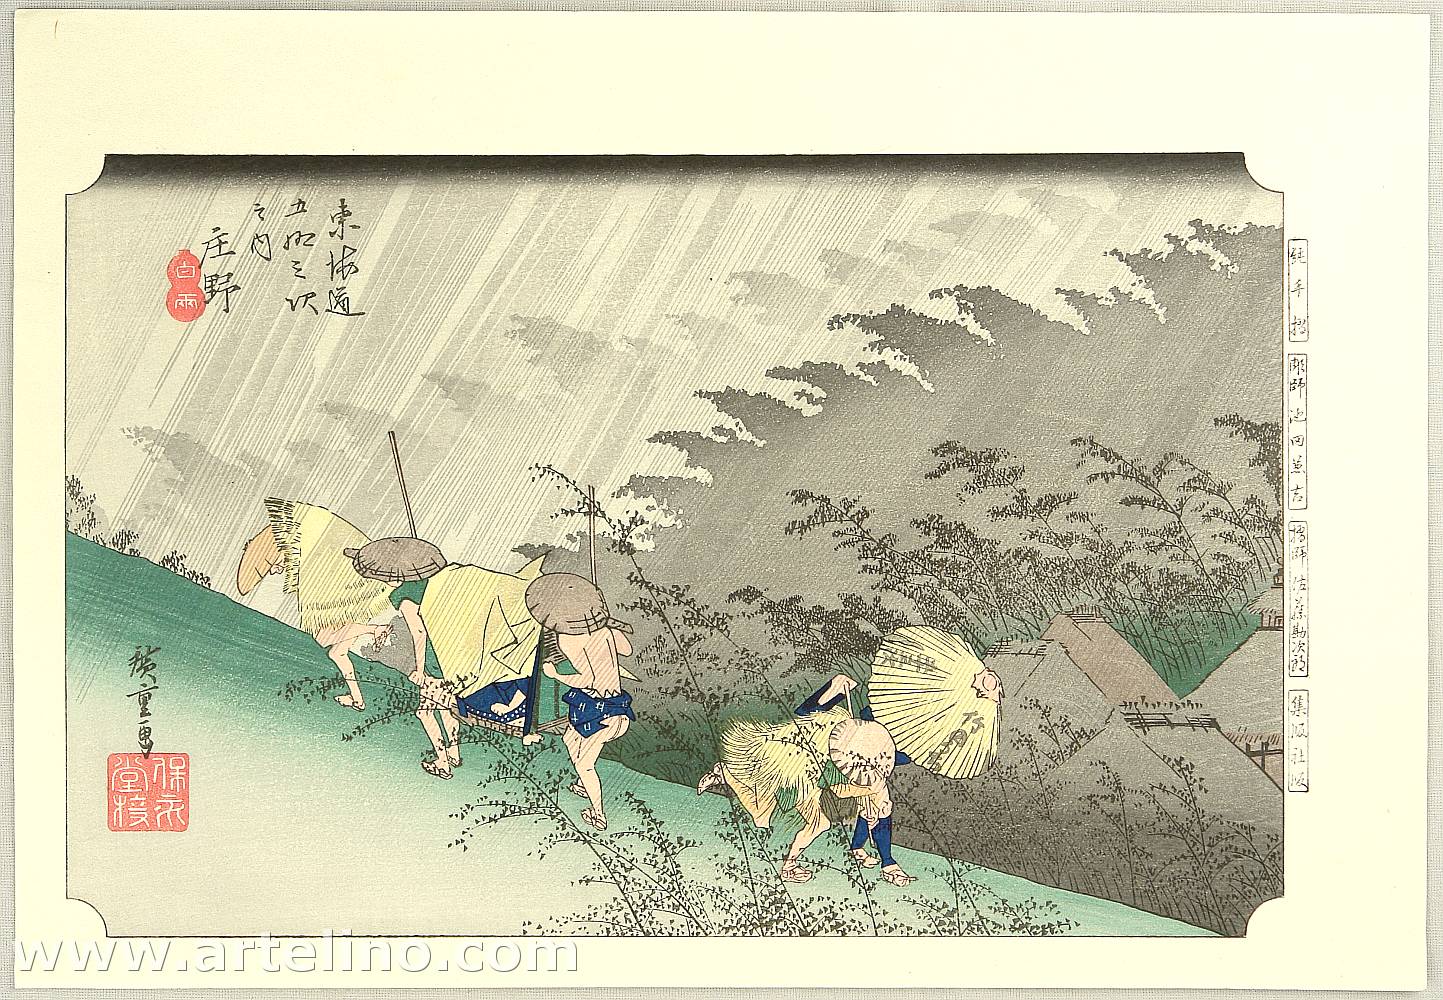 Utagawa Hiroshige: 53 Stations of the Tokaido - Shono - Artelino 